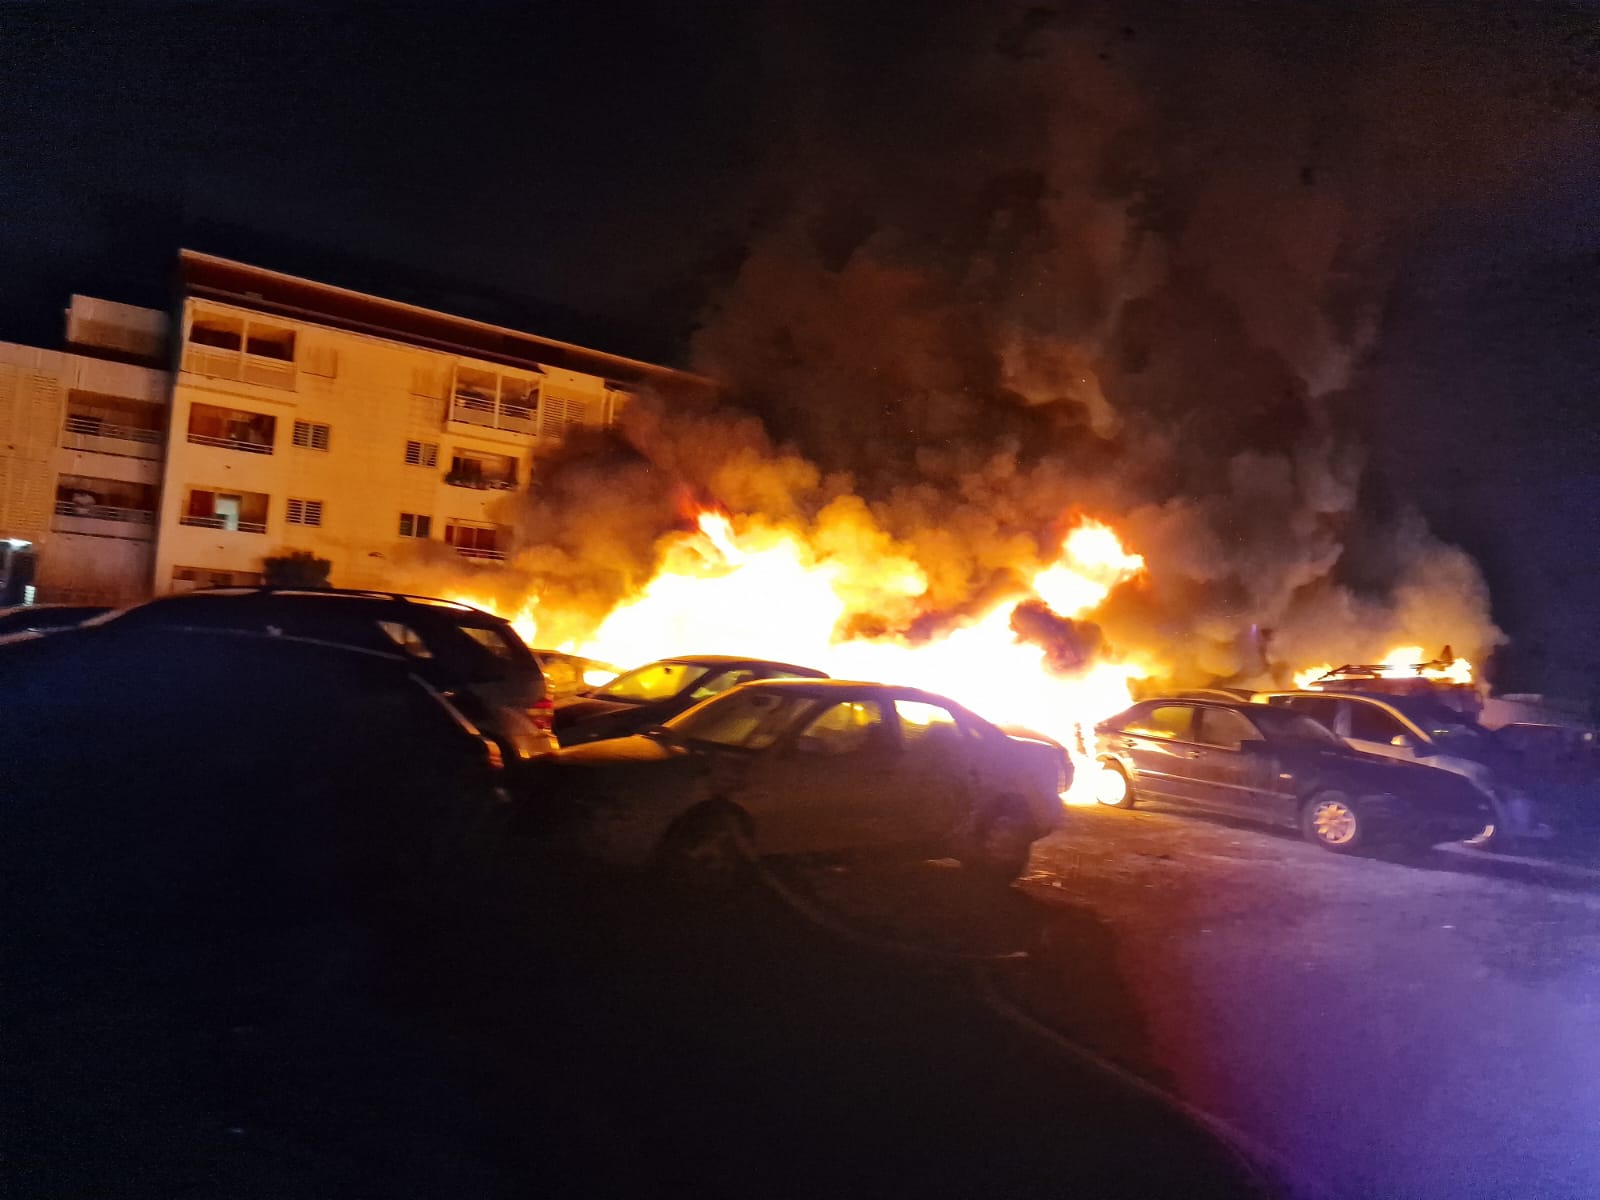     16 véhicules détruits par un incendie dans la nuit à Pointe-à-Pitre

